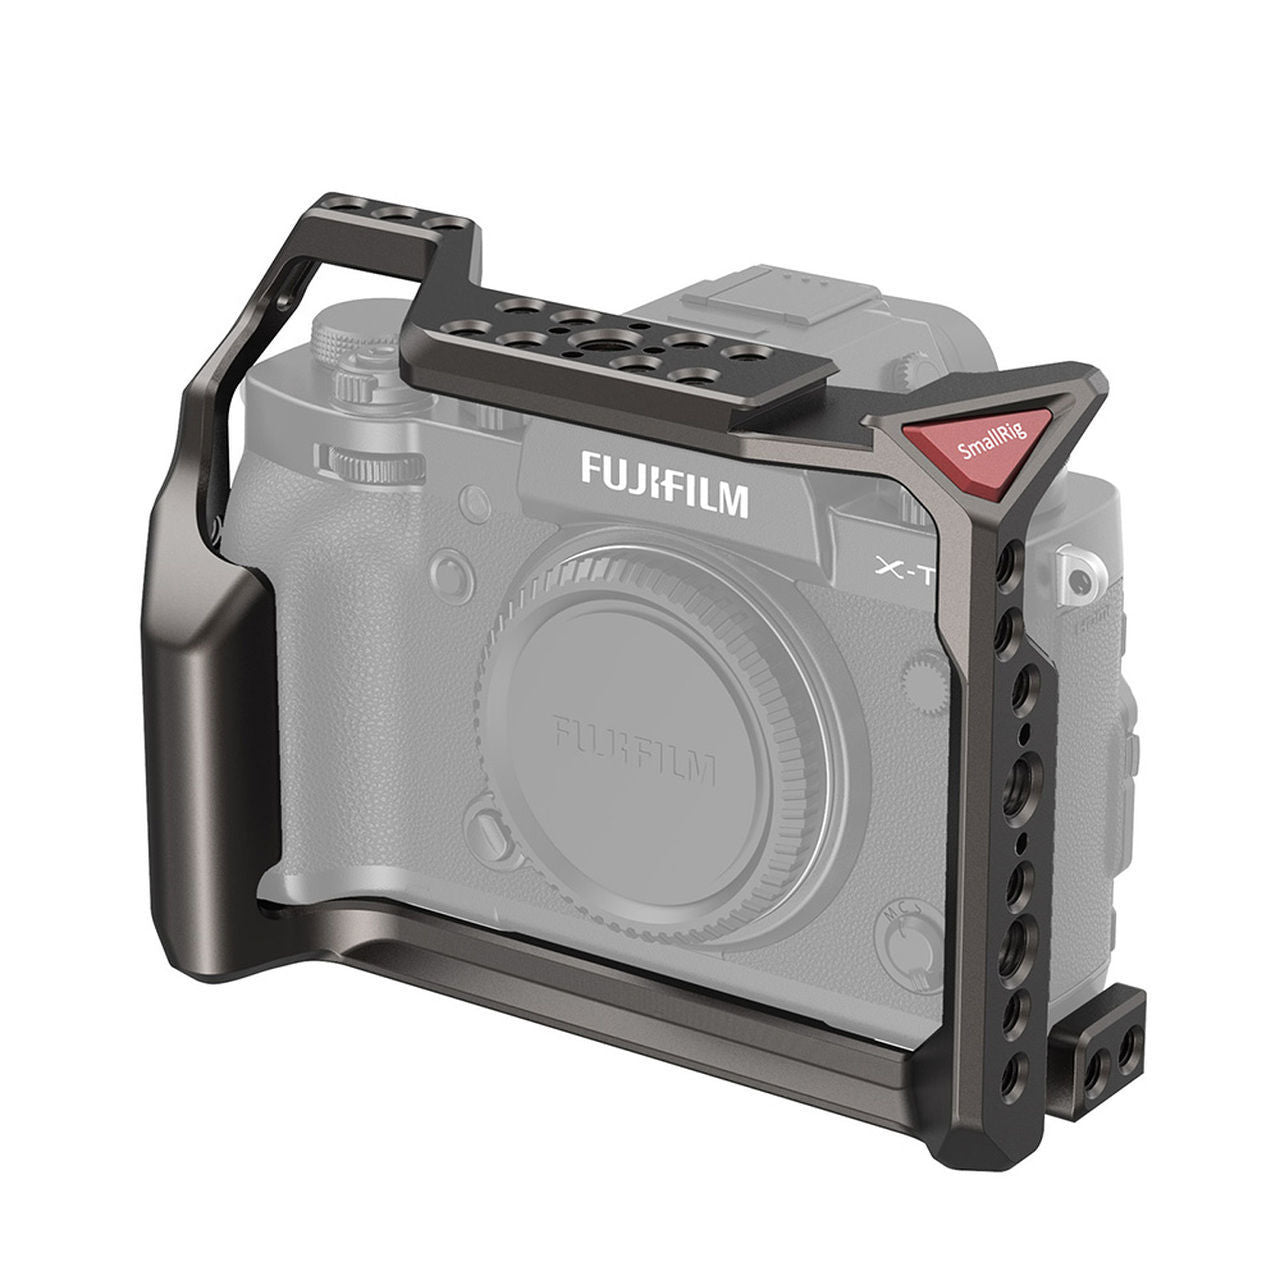 Smallrig Cage For Fujifilm X T3 Camera Ccf2800